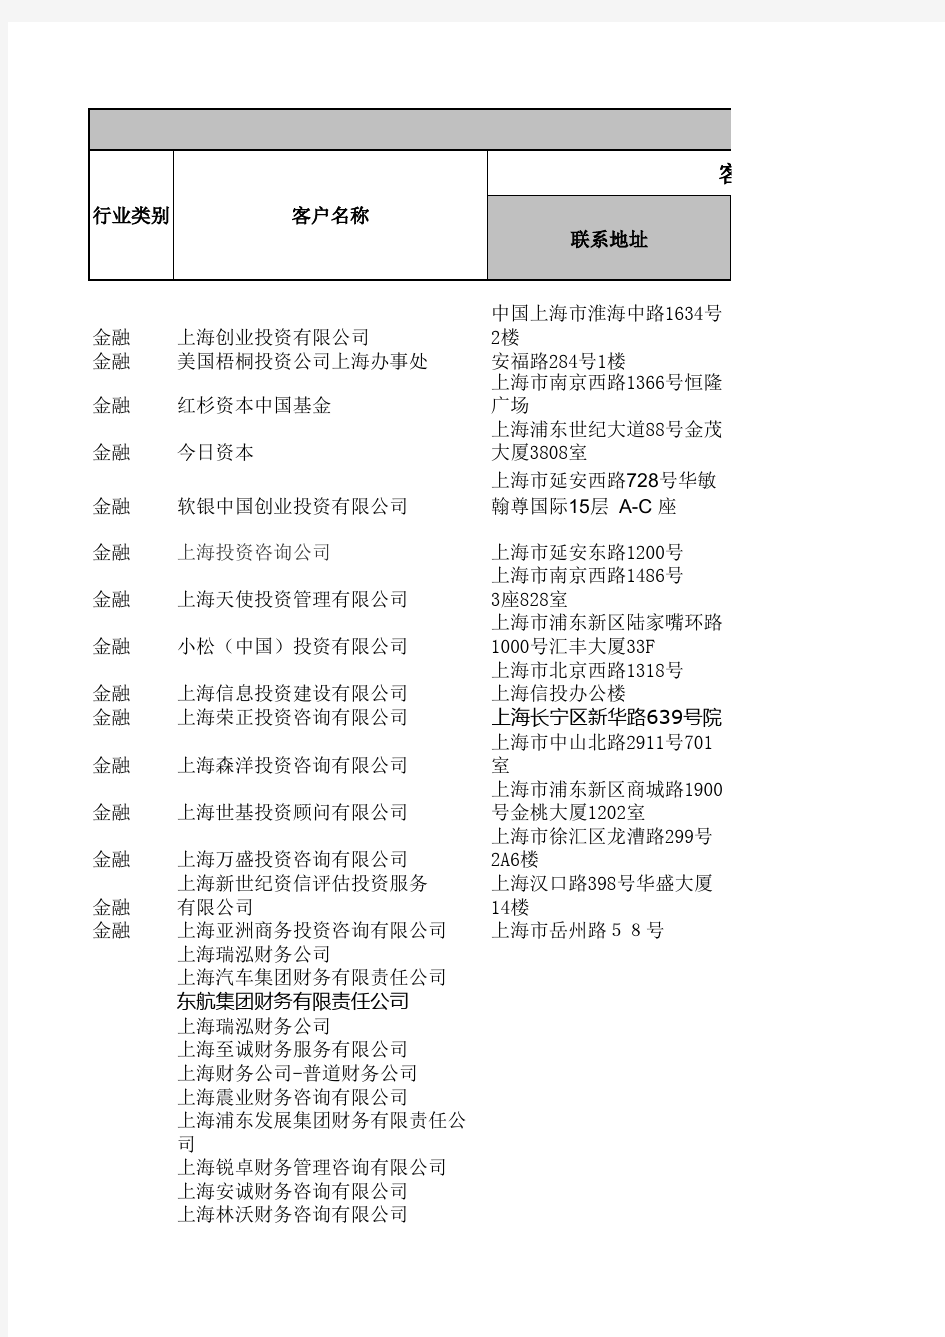 上海投资管理公司名单节选.xls